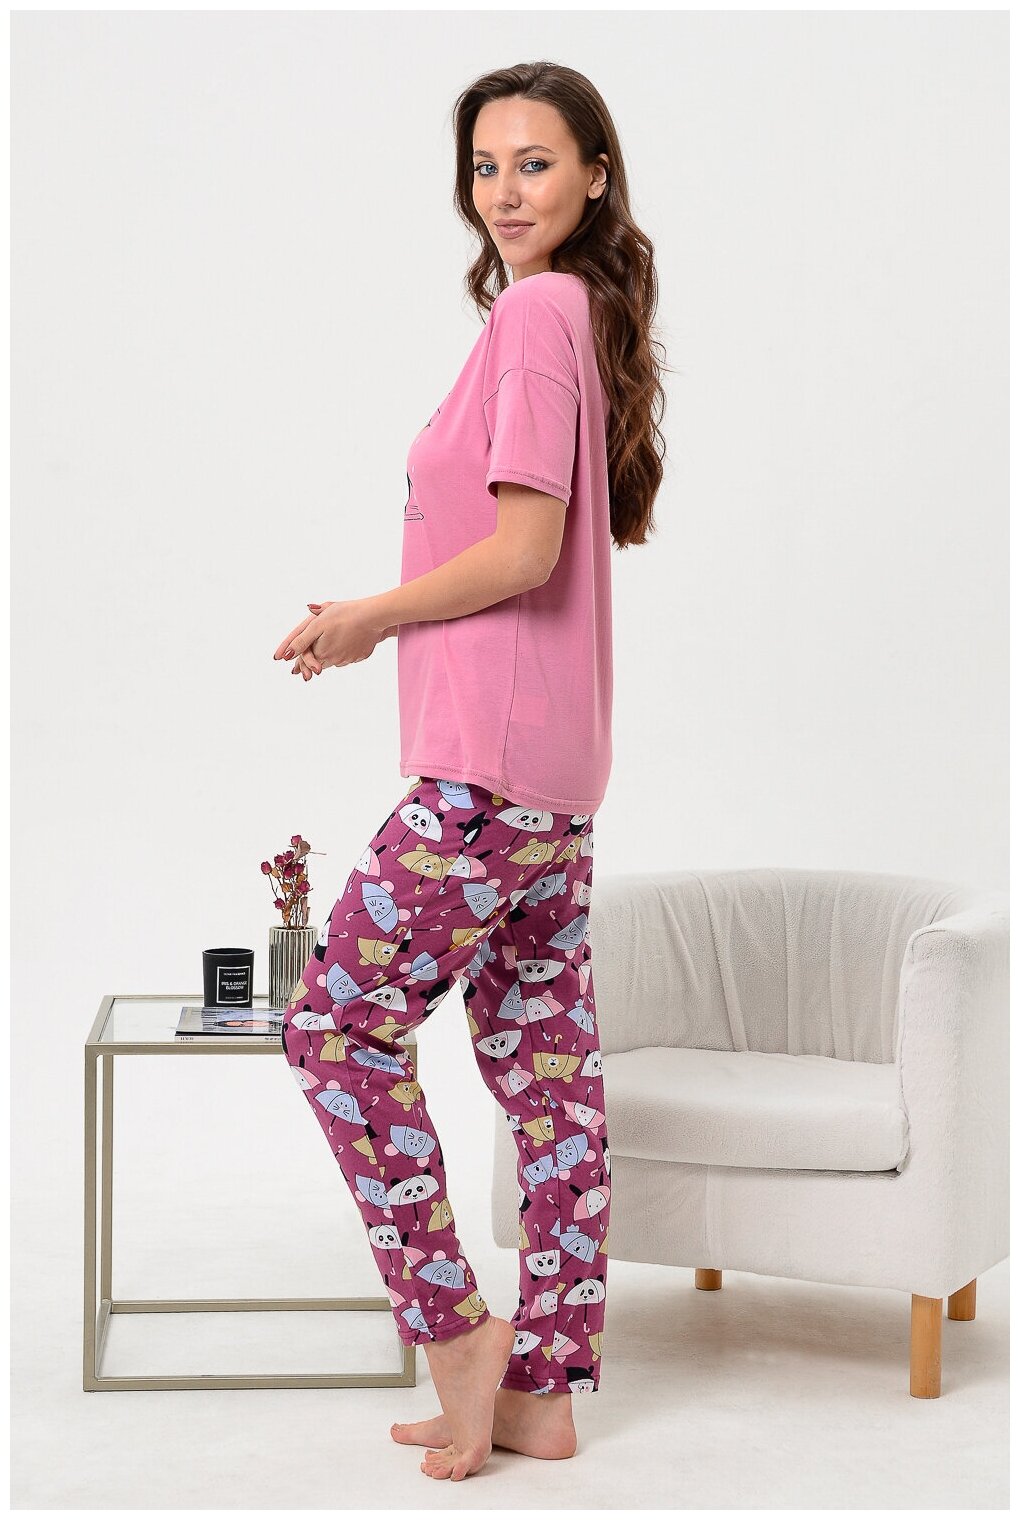 Женский домашний костюм/ пижама (футболка+ брюки) в цвете брусника, размер 44 - фотография № 11